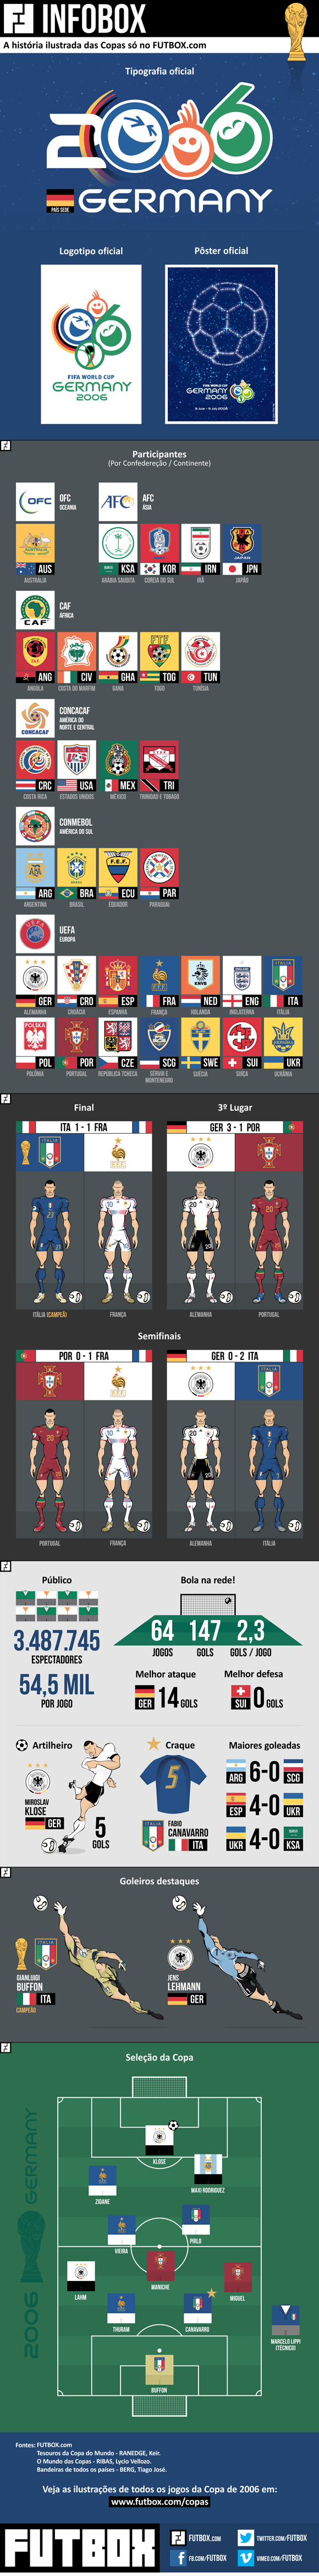 Infográfico – Copa do Mundo de 2006